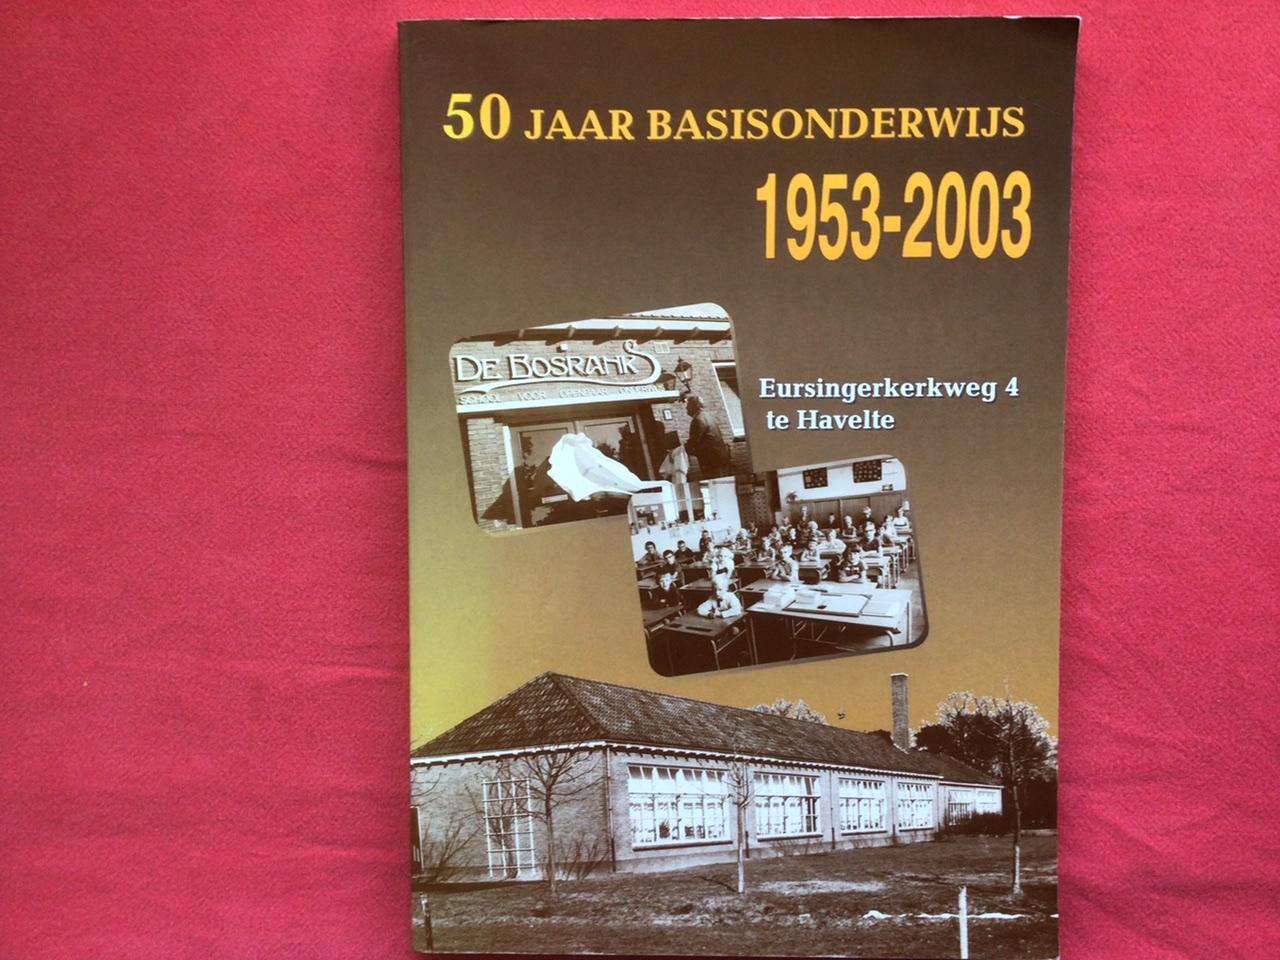 Oosting, B. (samenst) - 50 jaar basisonderwijs 1953-2003 (Eursingerkerkweg 4 te Havelte)